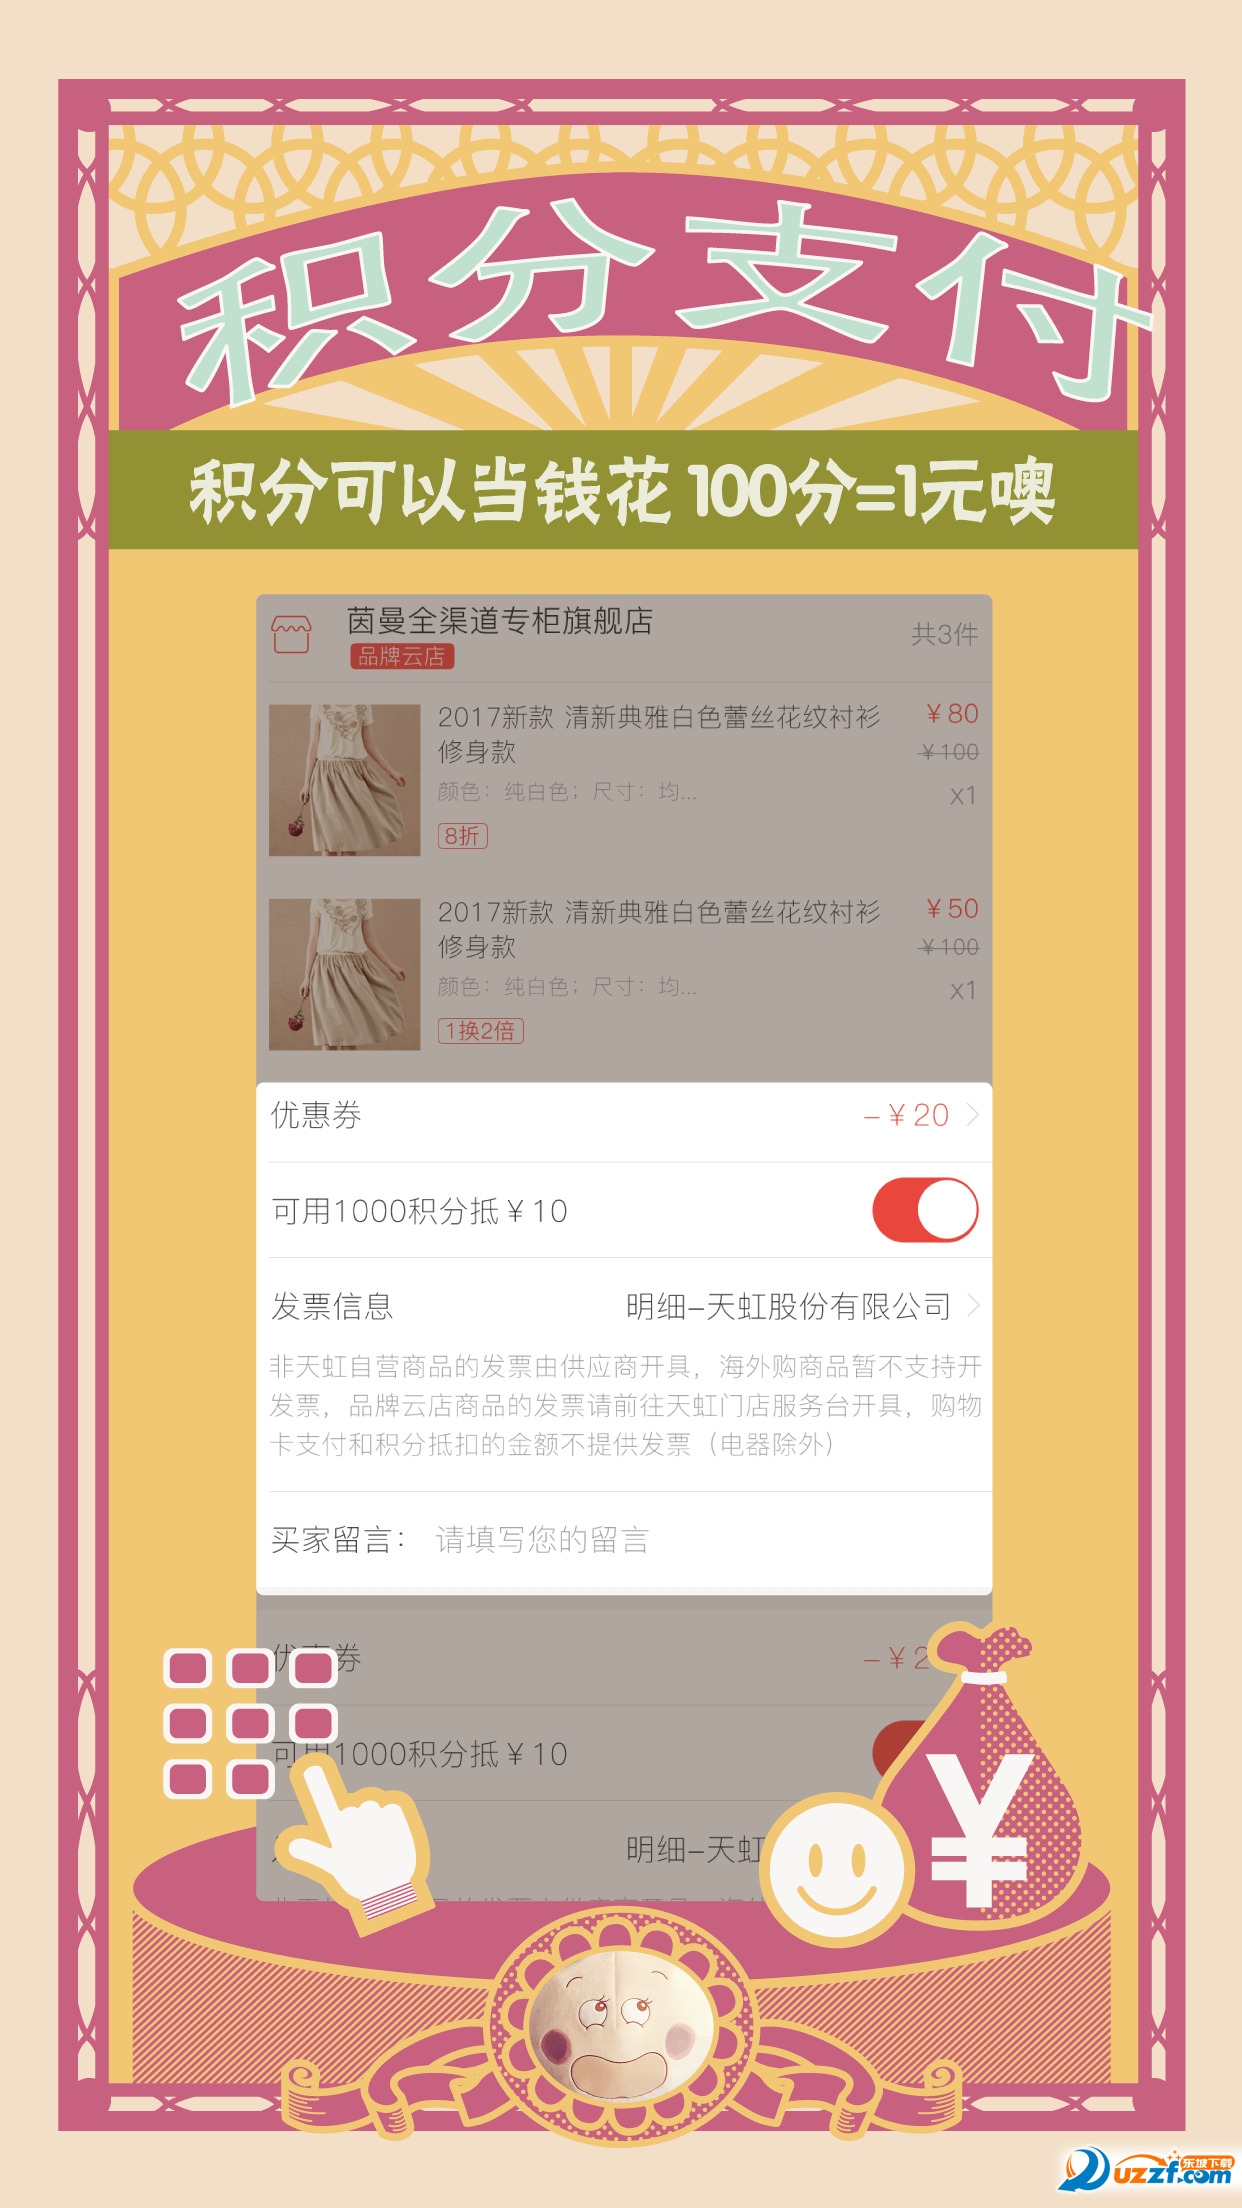 虹领巾iphone下载 虹领巾ios版 手机购物商城 3 1 1 苹果版下载 东坡手机下载